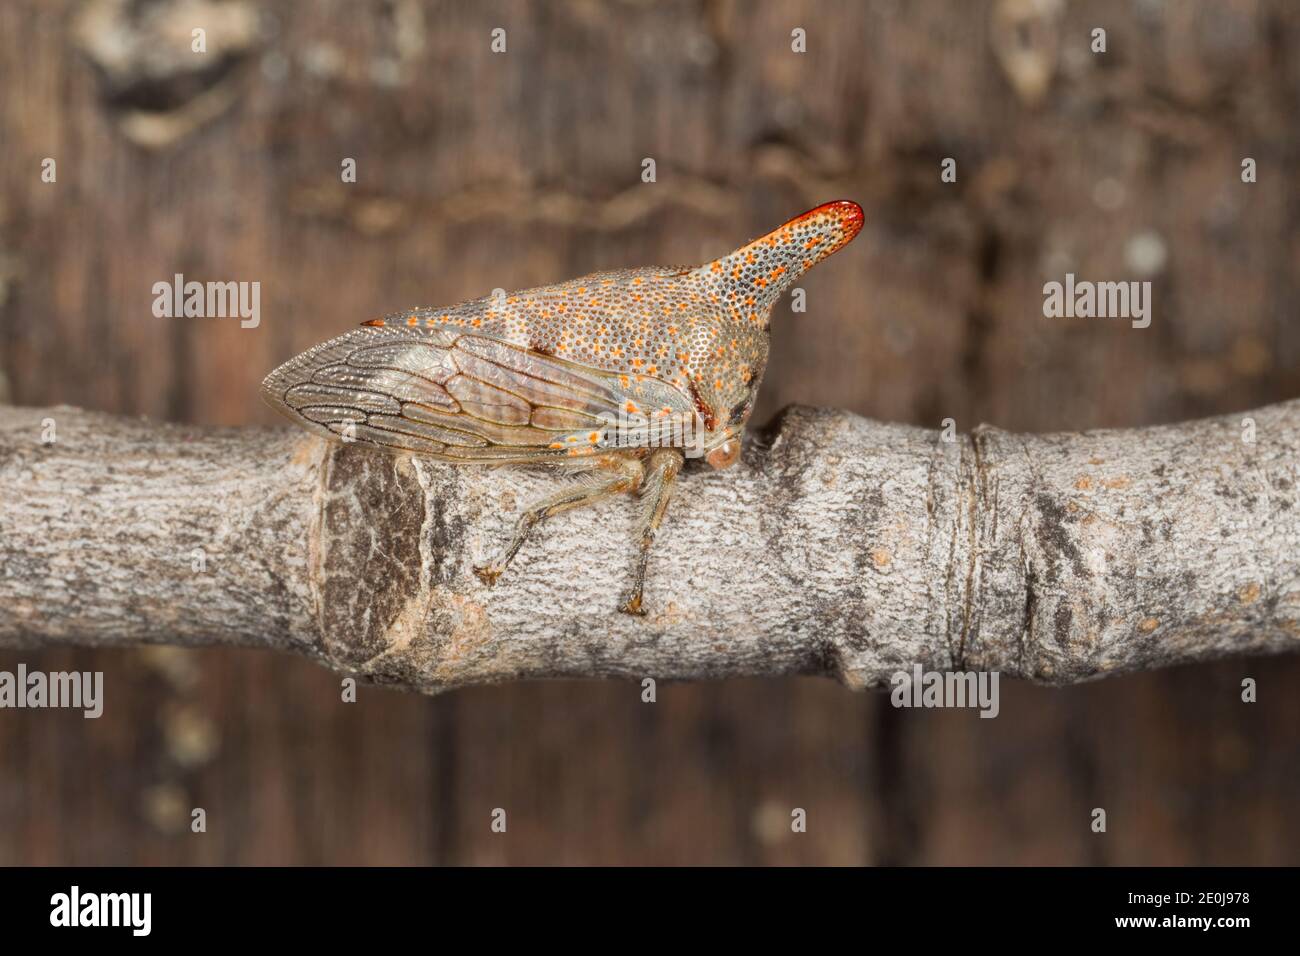 Treehopper di quercia, Platycotis vittata, Membracidae. Lunghezza 11 mm. Foto Stock